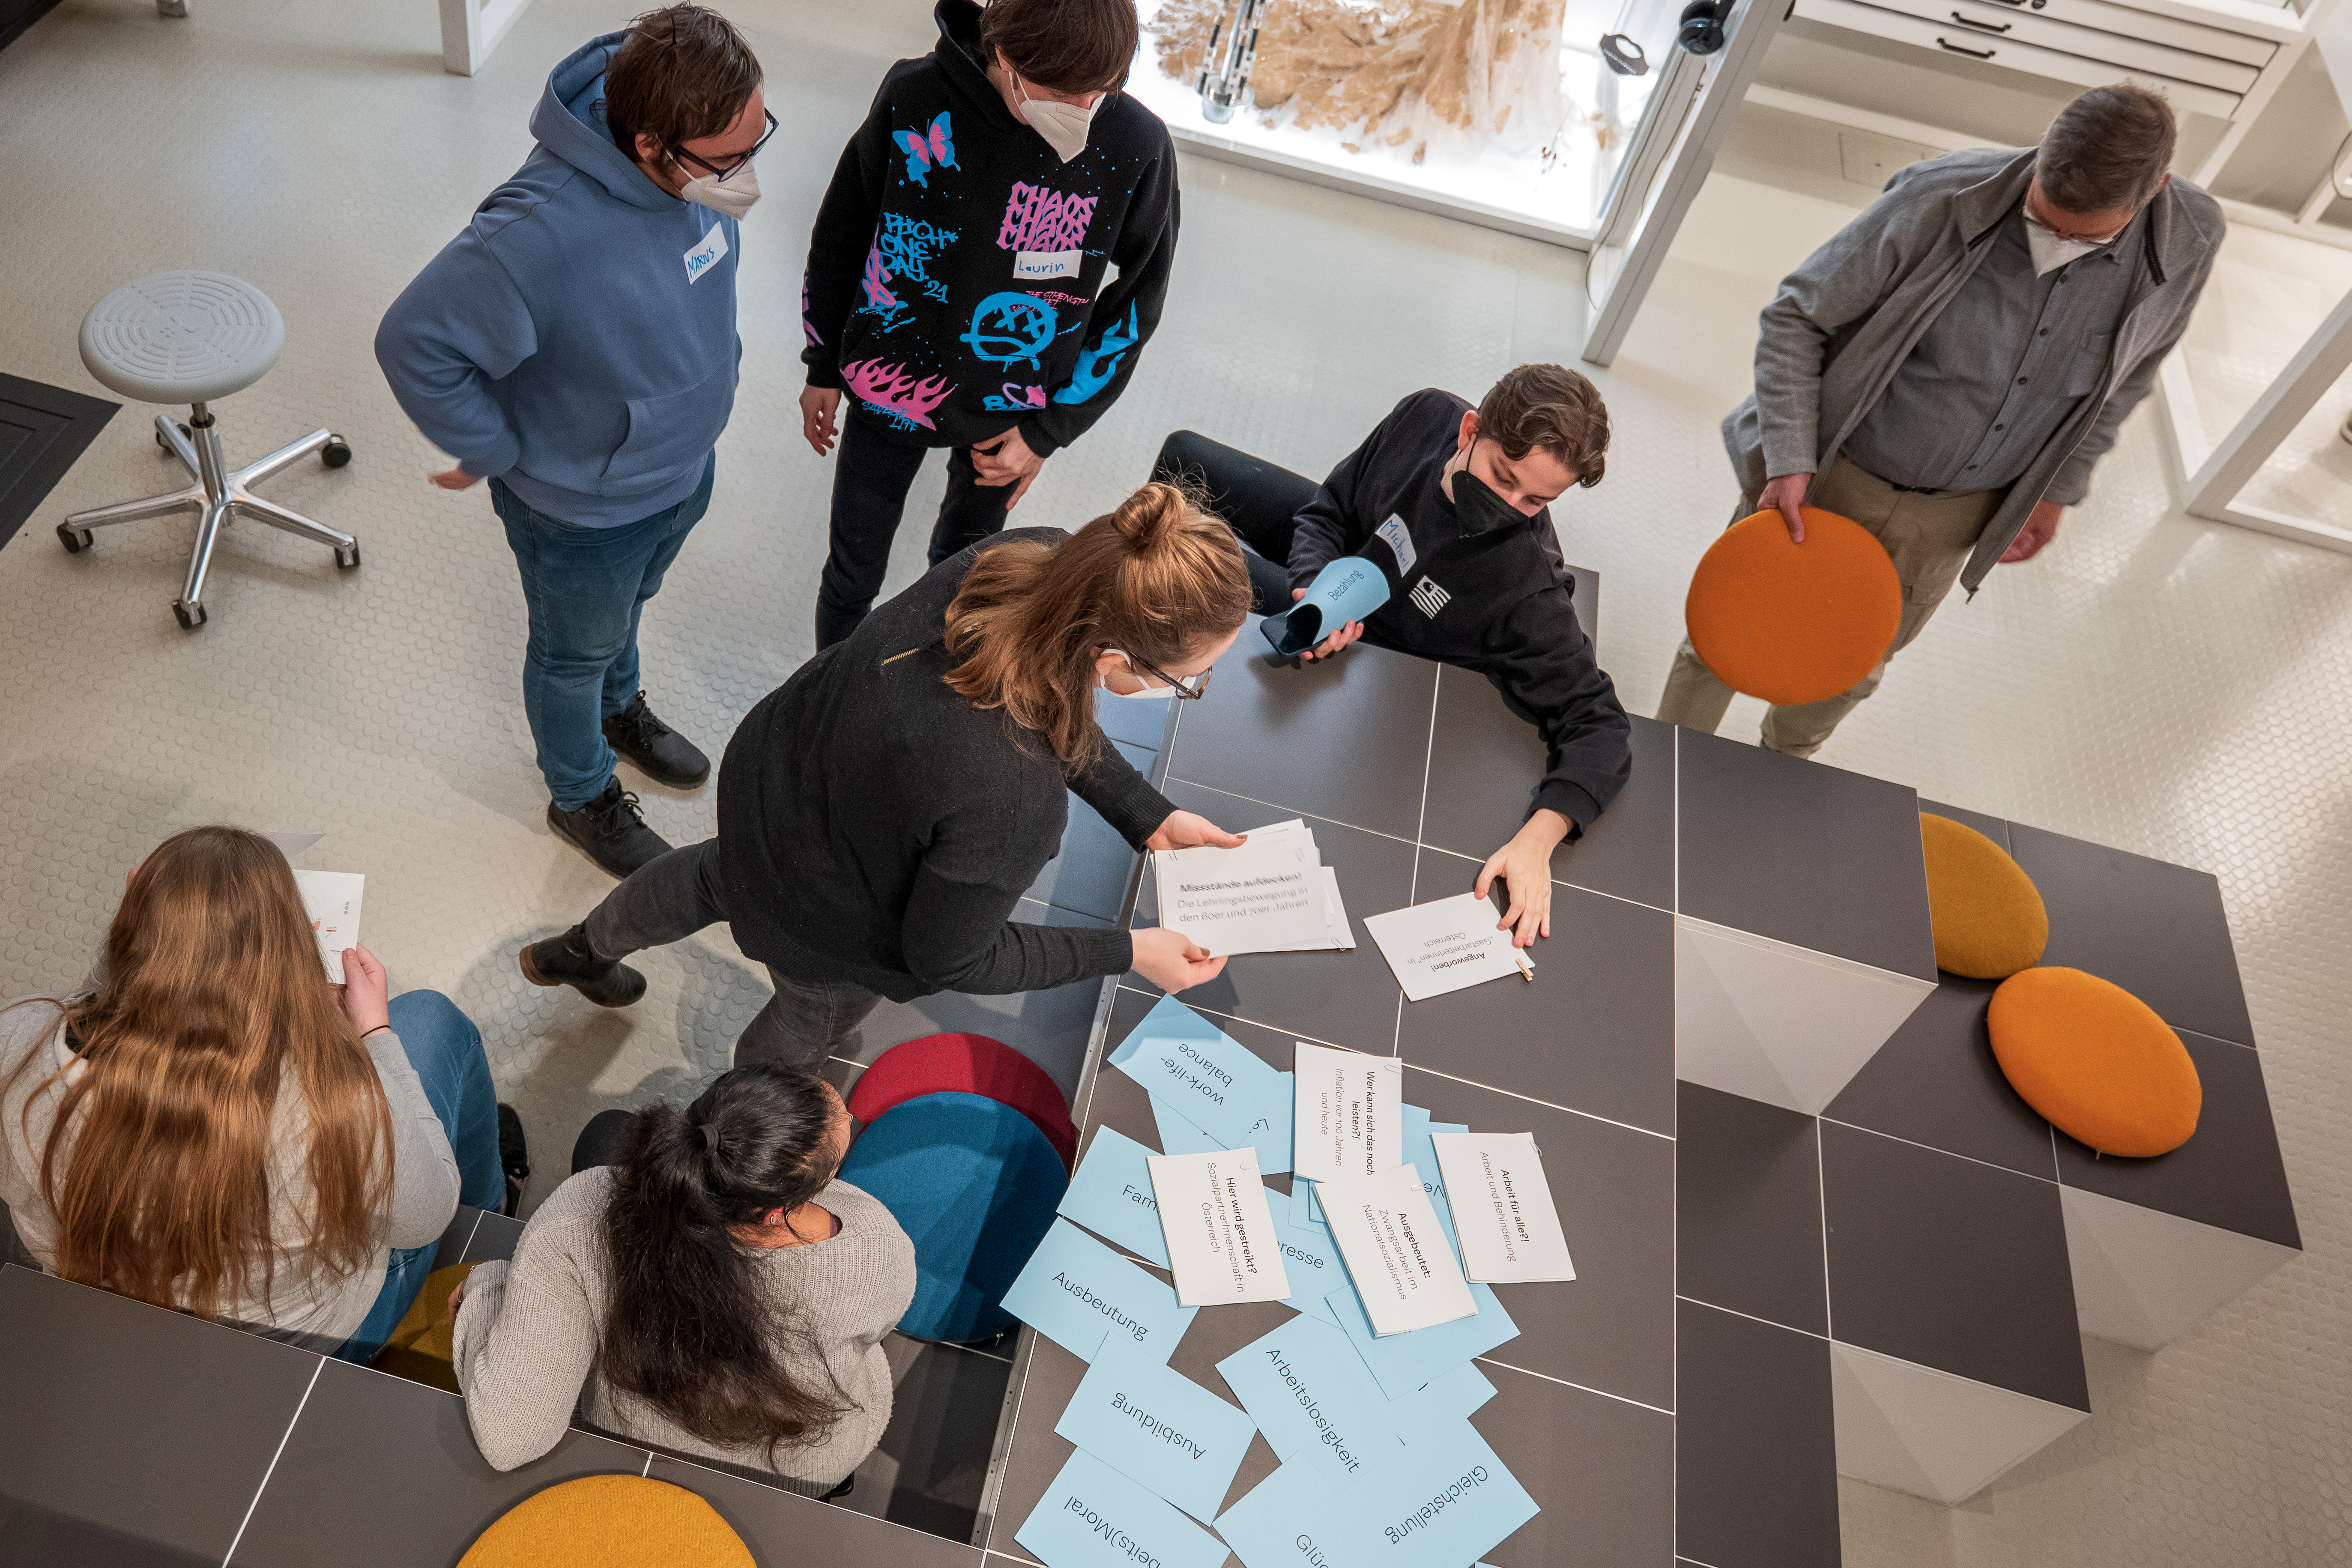 Foto einer Gruppe von Museumsbesuchern, die sich in einem Workshop mit dem Ausstellungsmaterial beschäftigen.